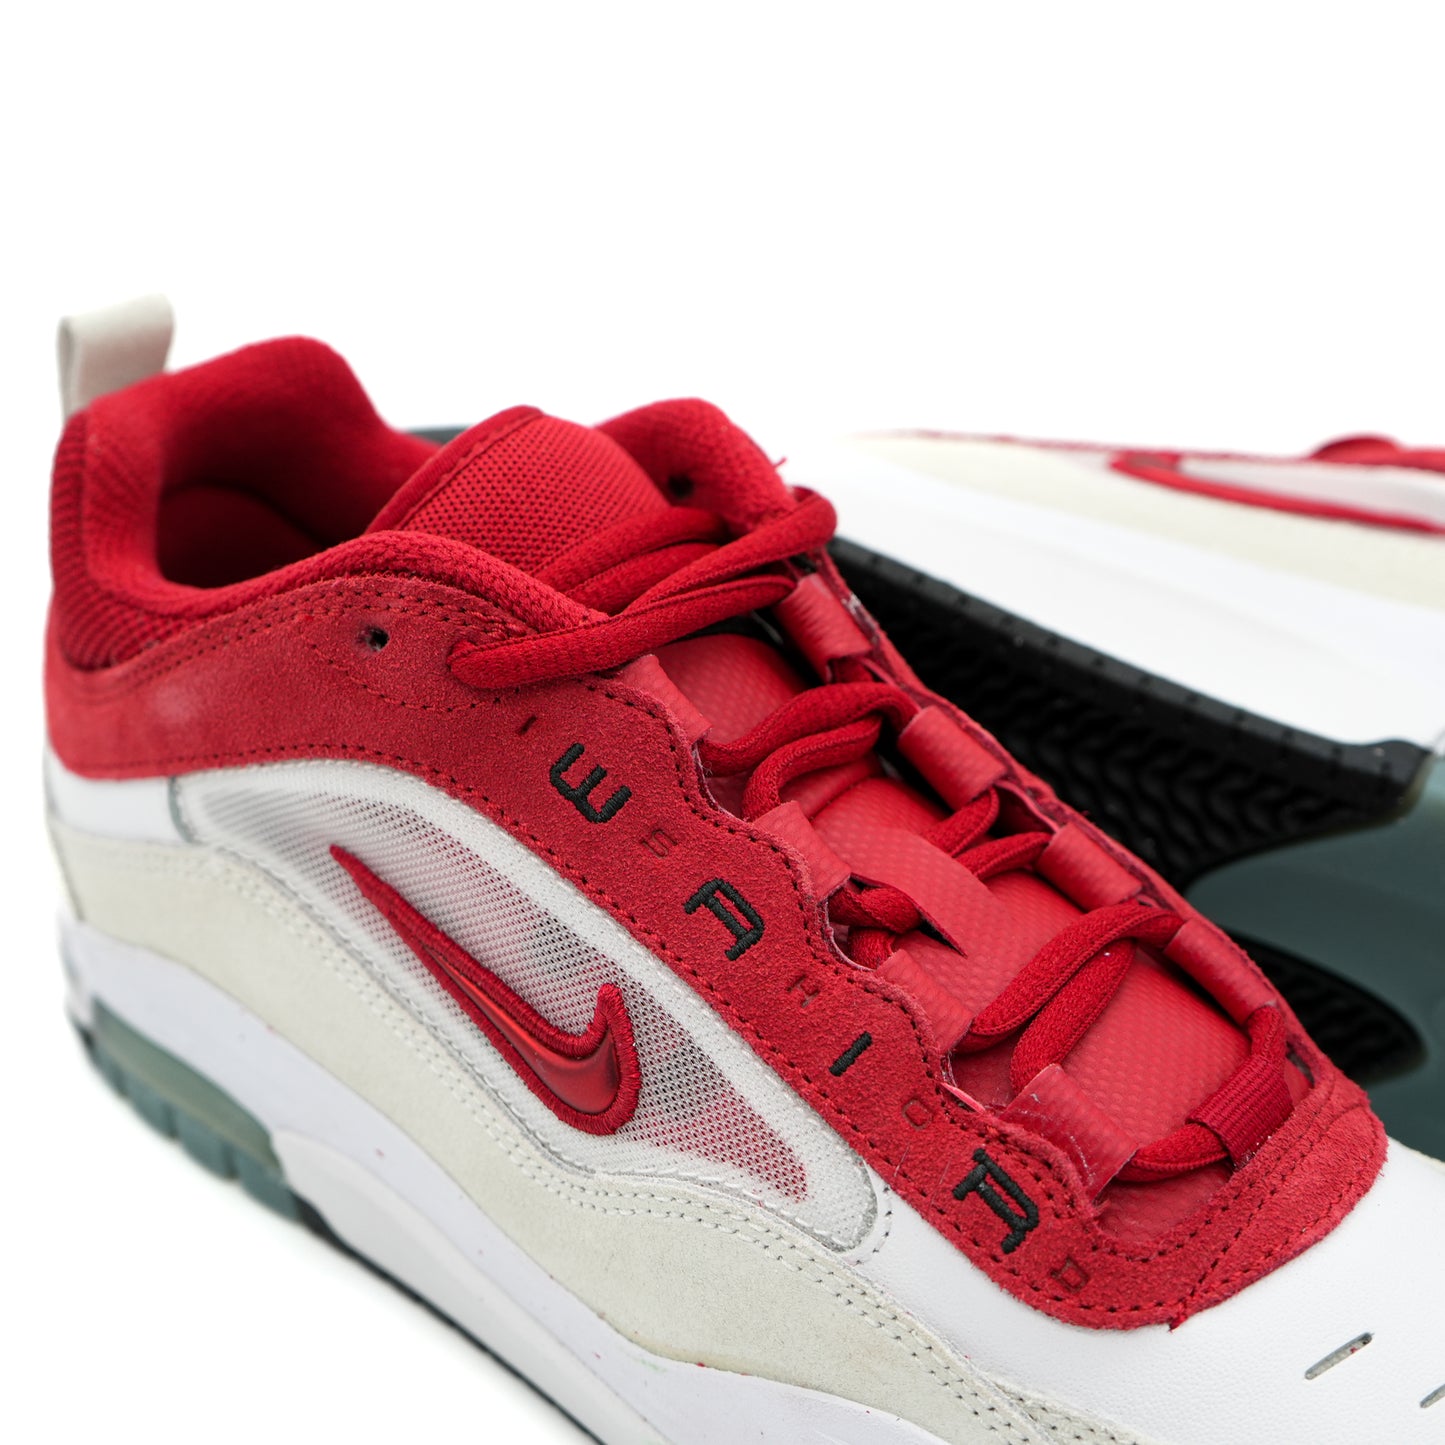 Nike SB Air Max Ishod - White/Varsity Red